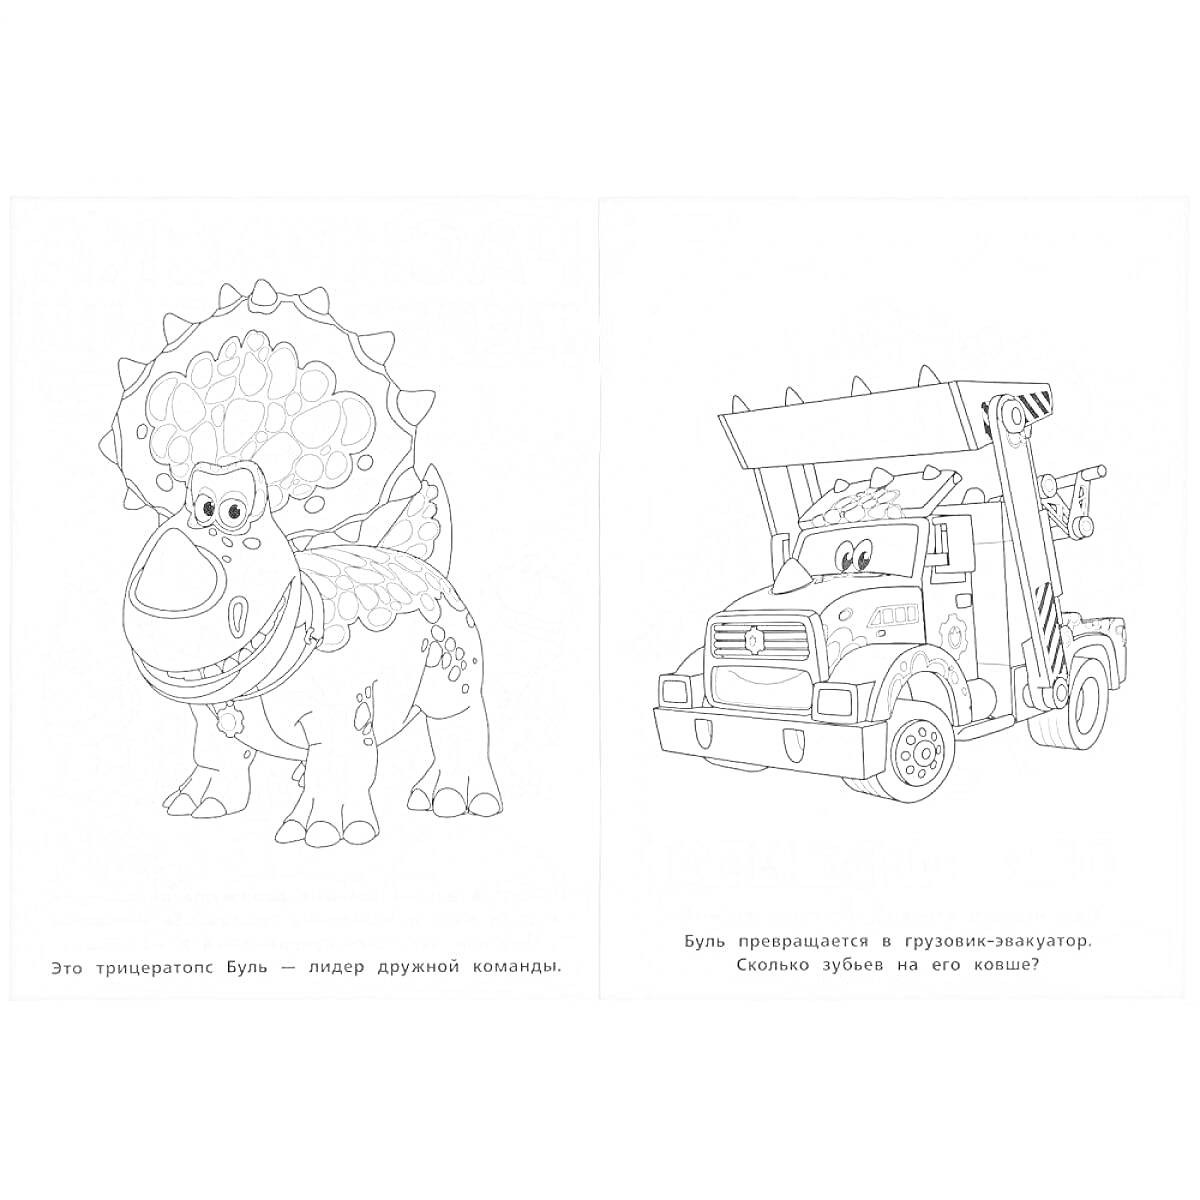 Турбозавры - Буря и грузовик-инженер